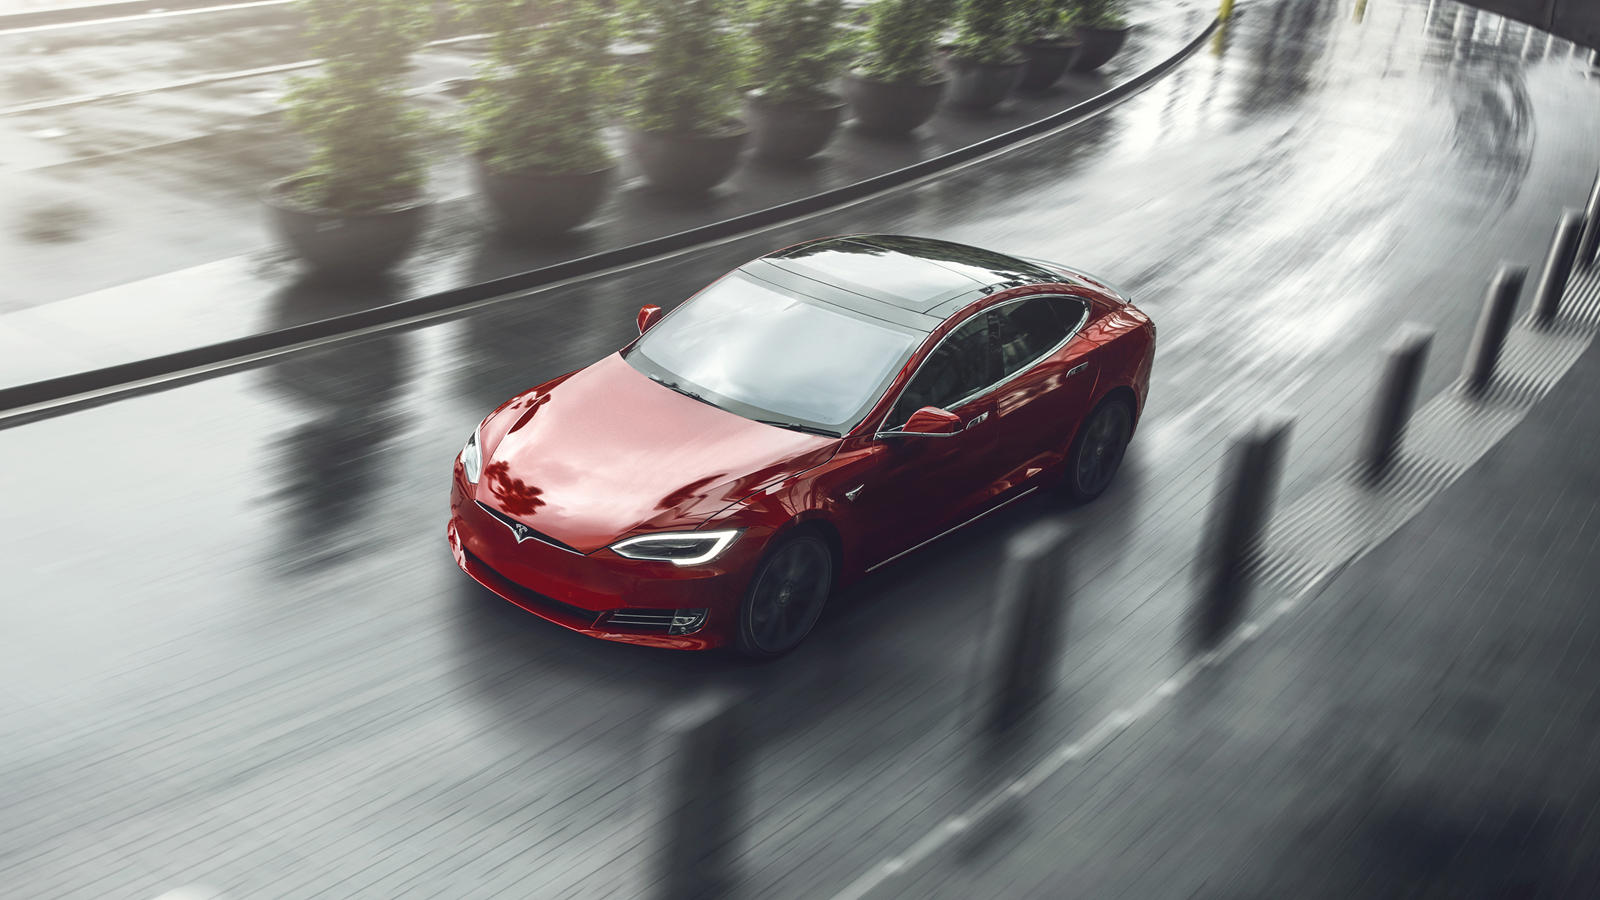 2020 год не был благоприятен для больших или малых автопроизводителей, но в первые два квартала года Tesla каким-то образом удалось заставить все работать. Компания только что получила прибыль за первый квартал, получив скудные 16 миллионов долларов,